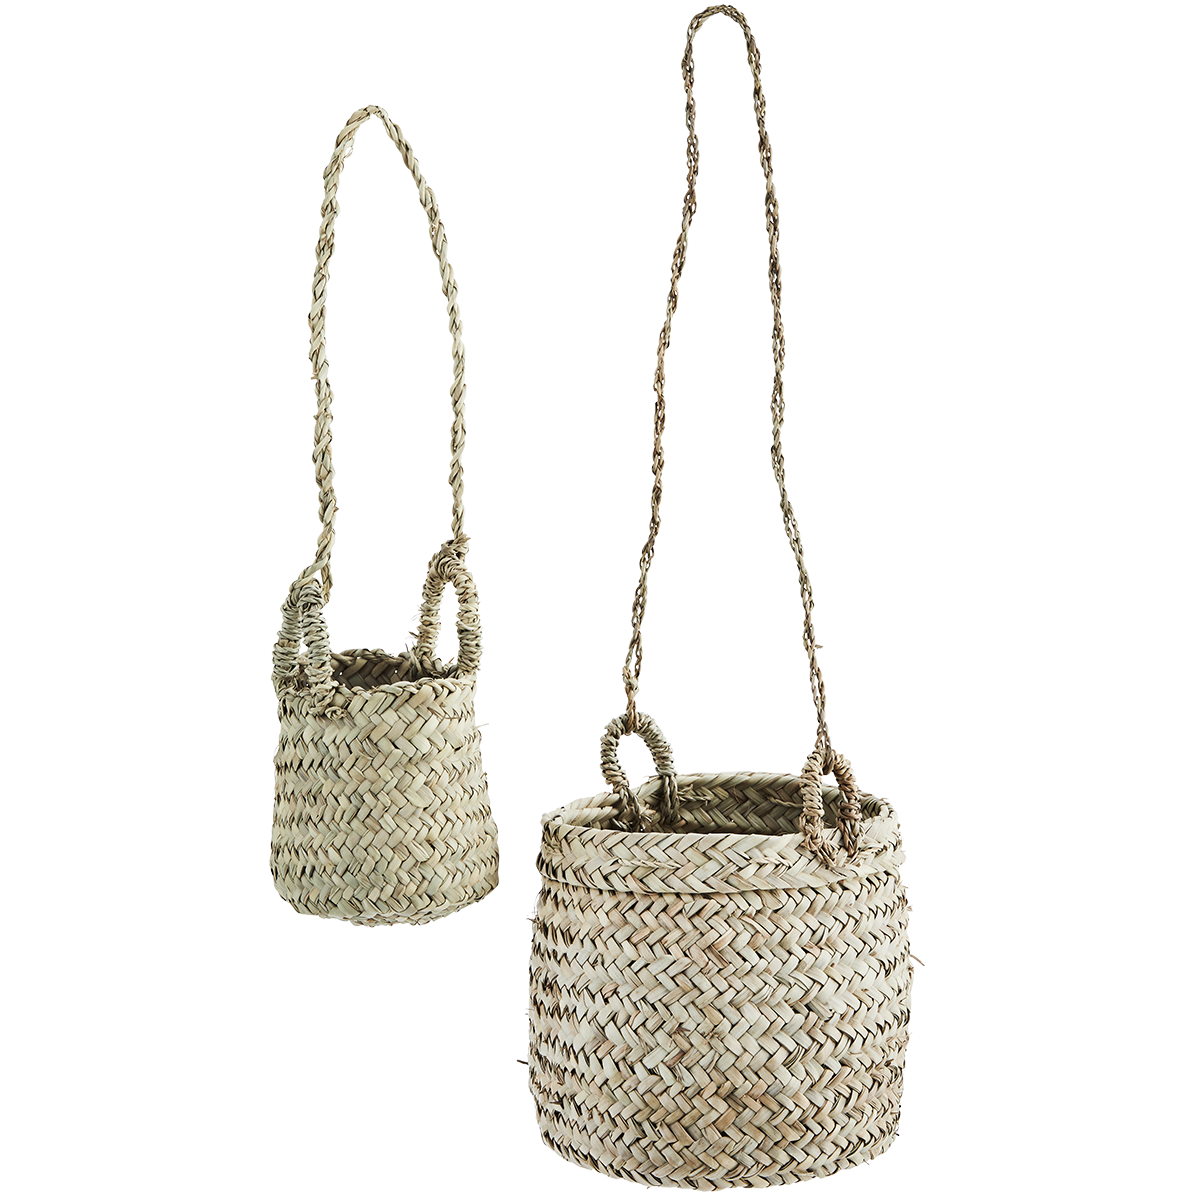 Hanging baskets